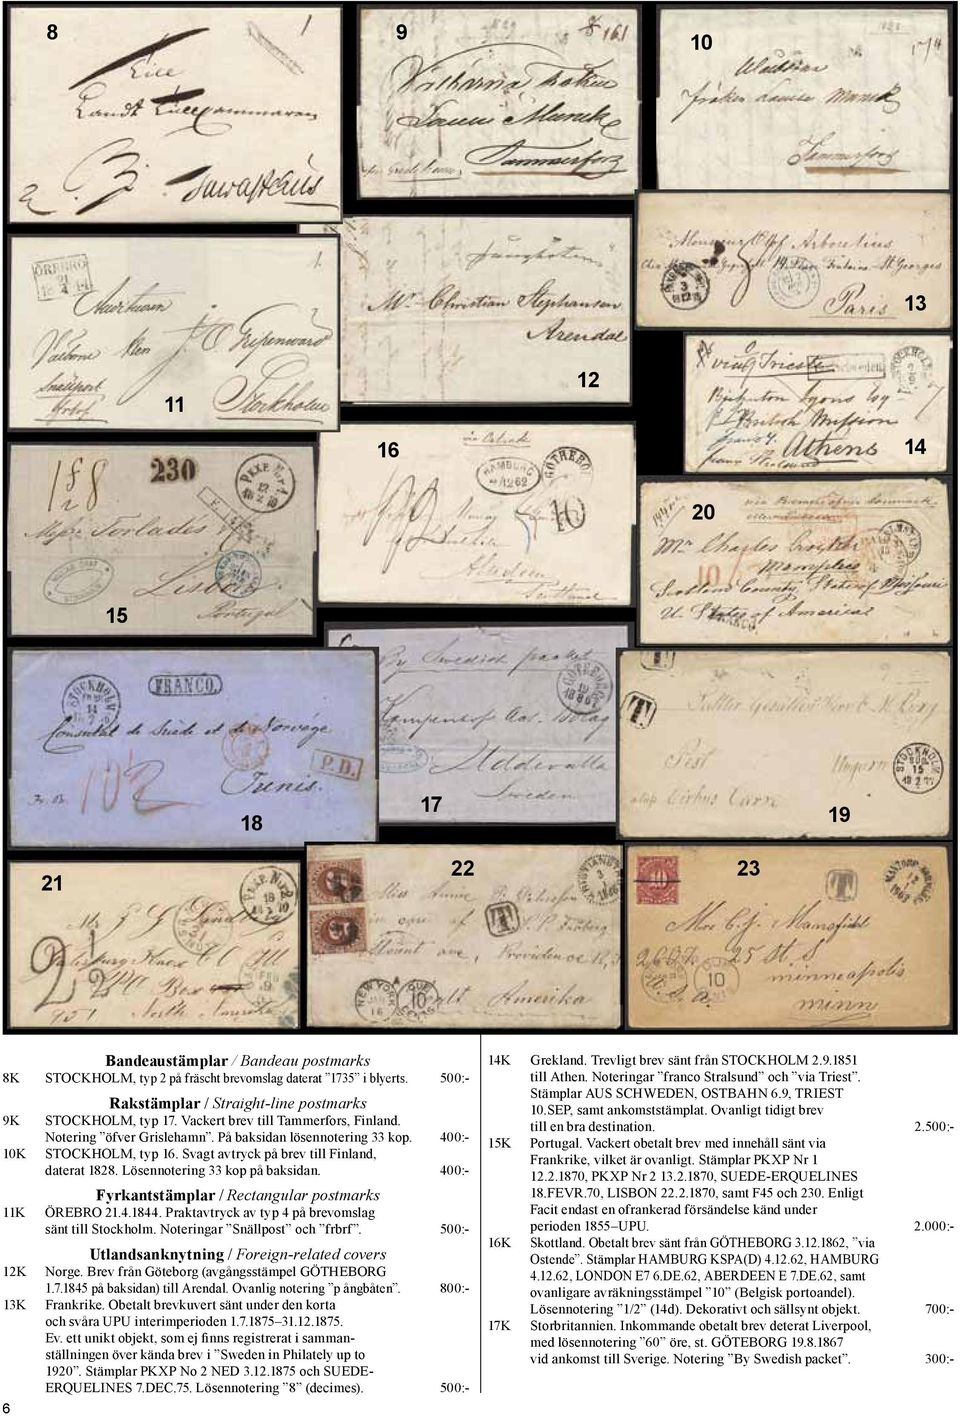 400:- STOCKHOLM, typ 16. Svagt avtryck på brev till Finland, daterat 1828. Lösennotering 33 kop på baksidan. 400:- Fyrkantstämplar / Rectangular postmarks ÖREBRO 21.4.1844.